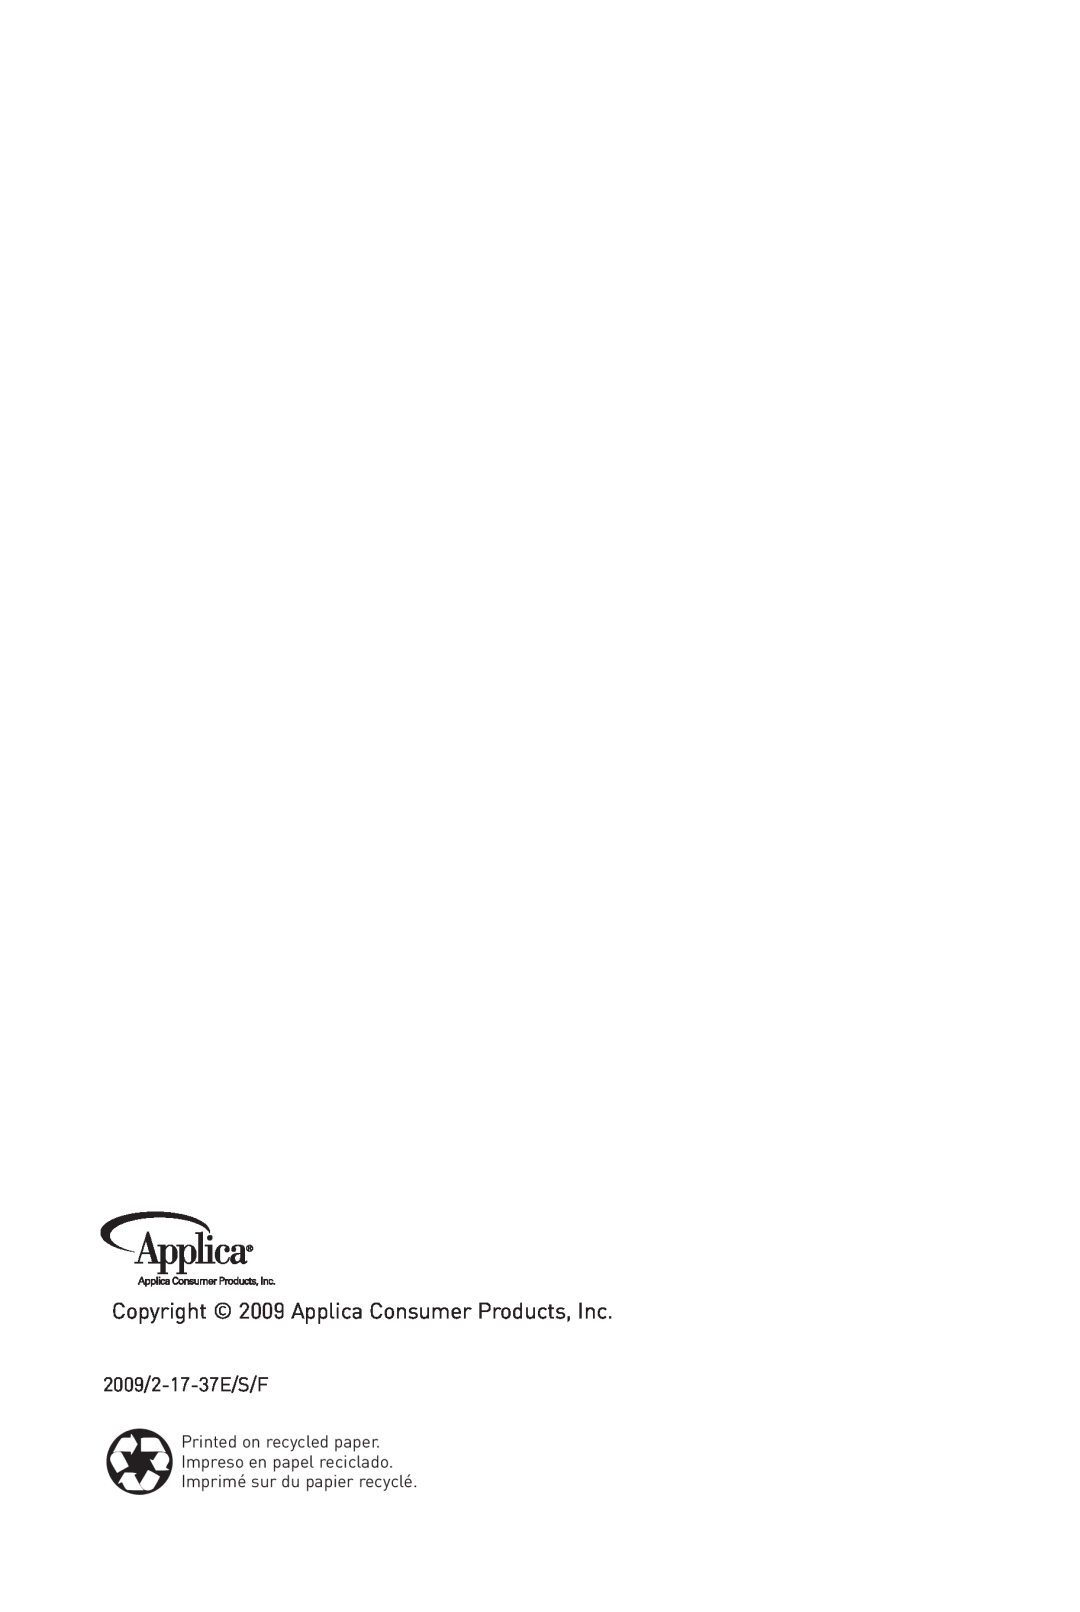 Black & Decker DLX850B Copyright 2009 Applica Consumer Products, Inc, 2009/2-17-37E/S/F, Imprimé sur du papier recyclé 